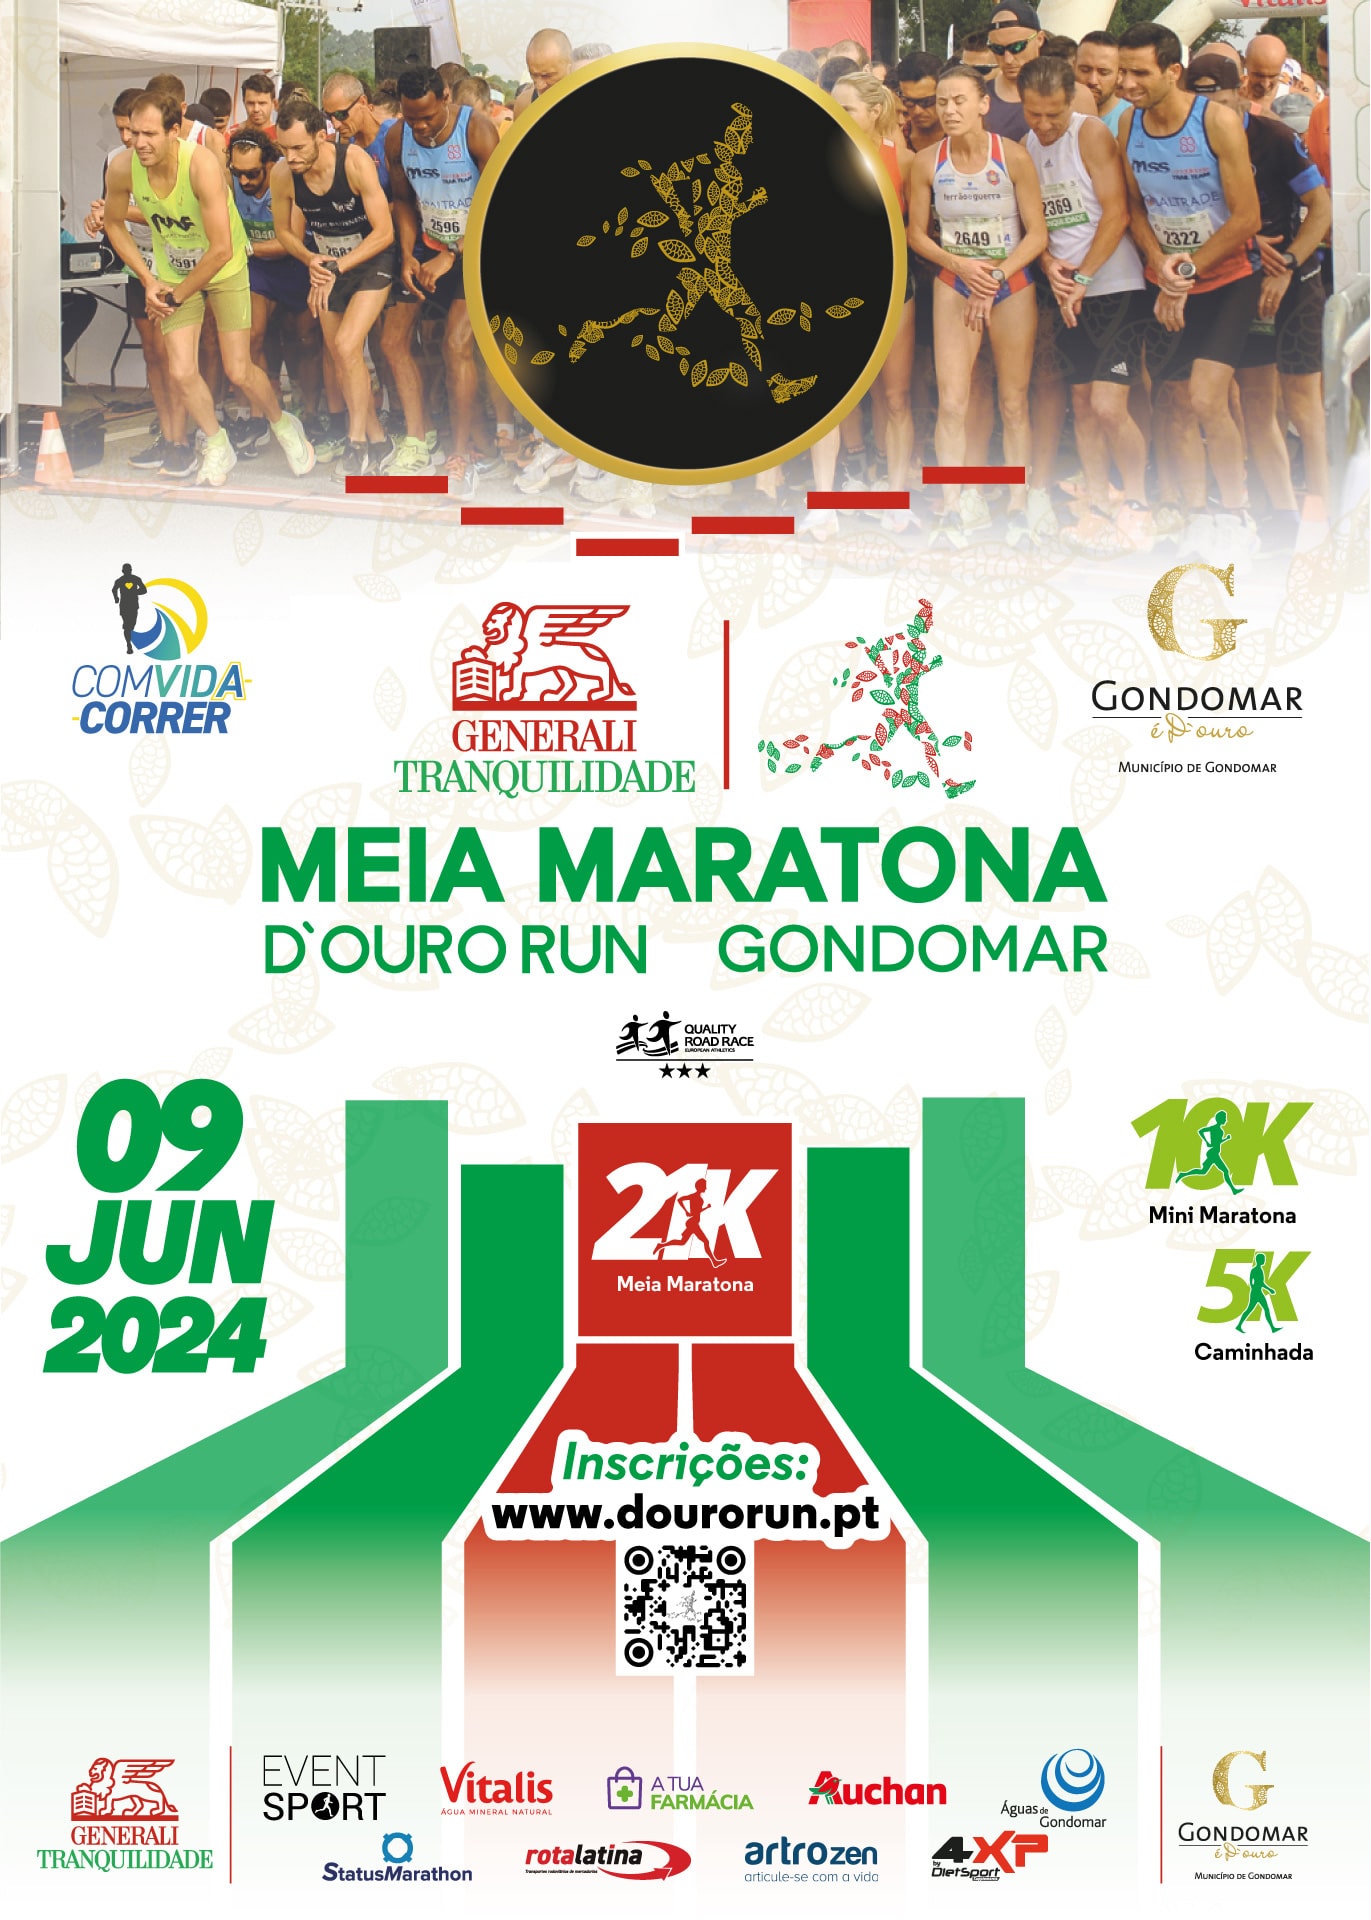 Generali-Tranquilidade-Meia-Maratona-Douro-Run-Gondomar